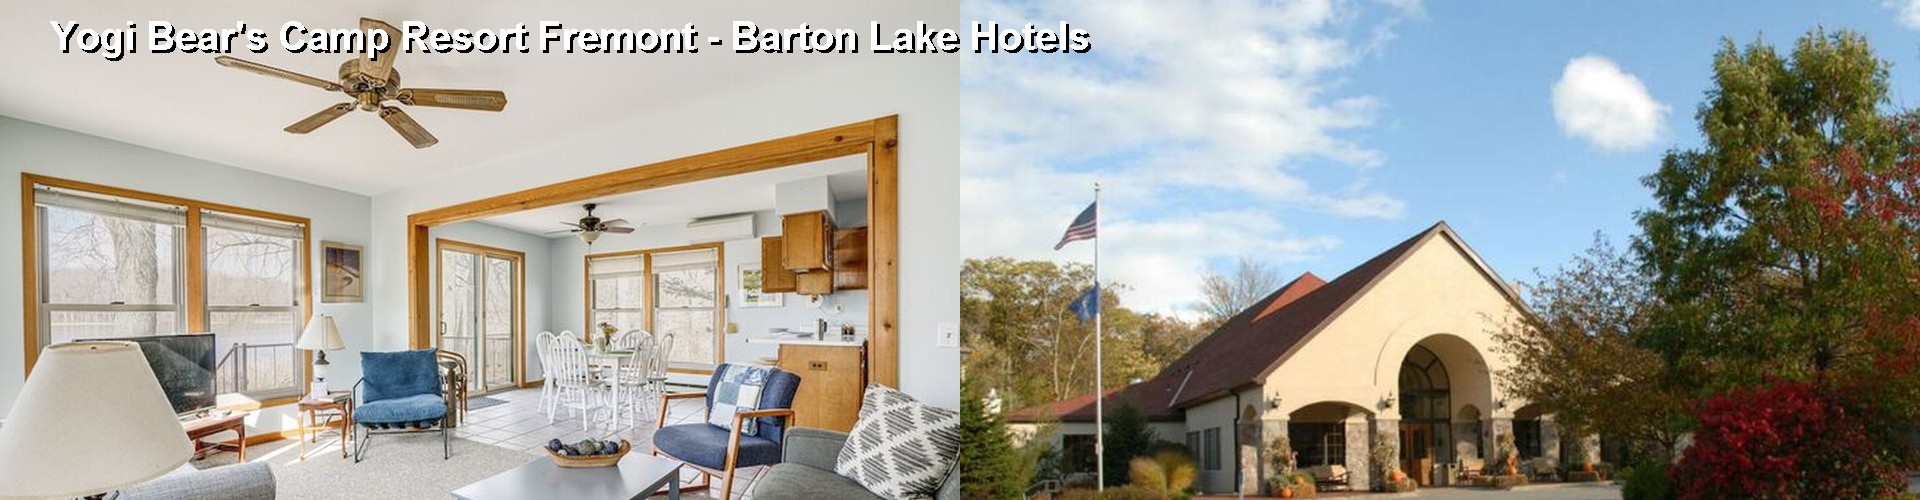 5 Best Hotels near Yogi Bear's Camp Resort Fremont - Barton Lake